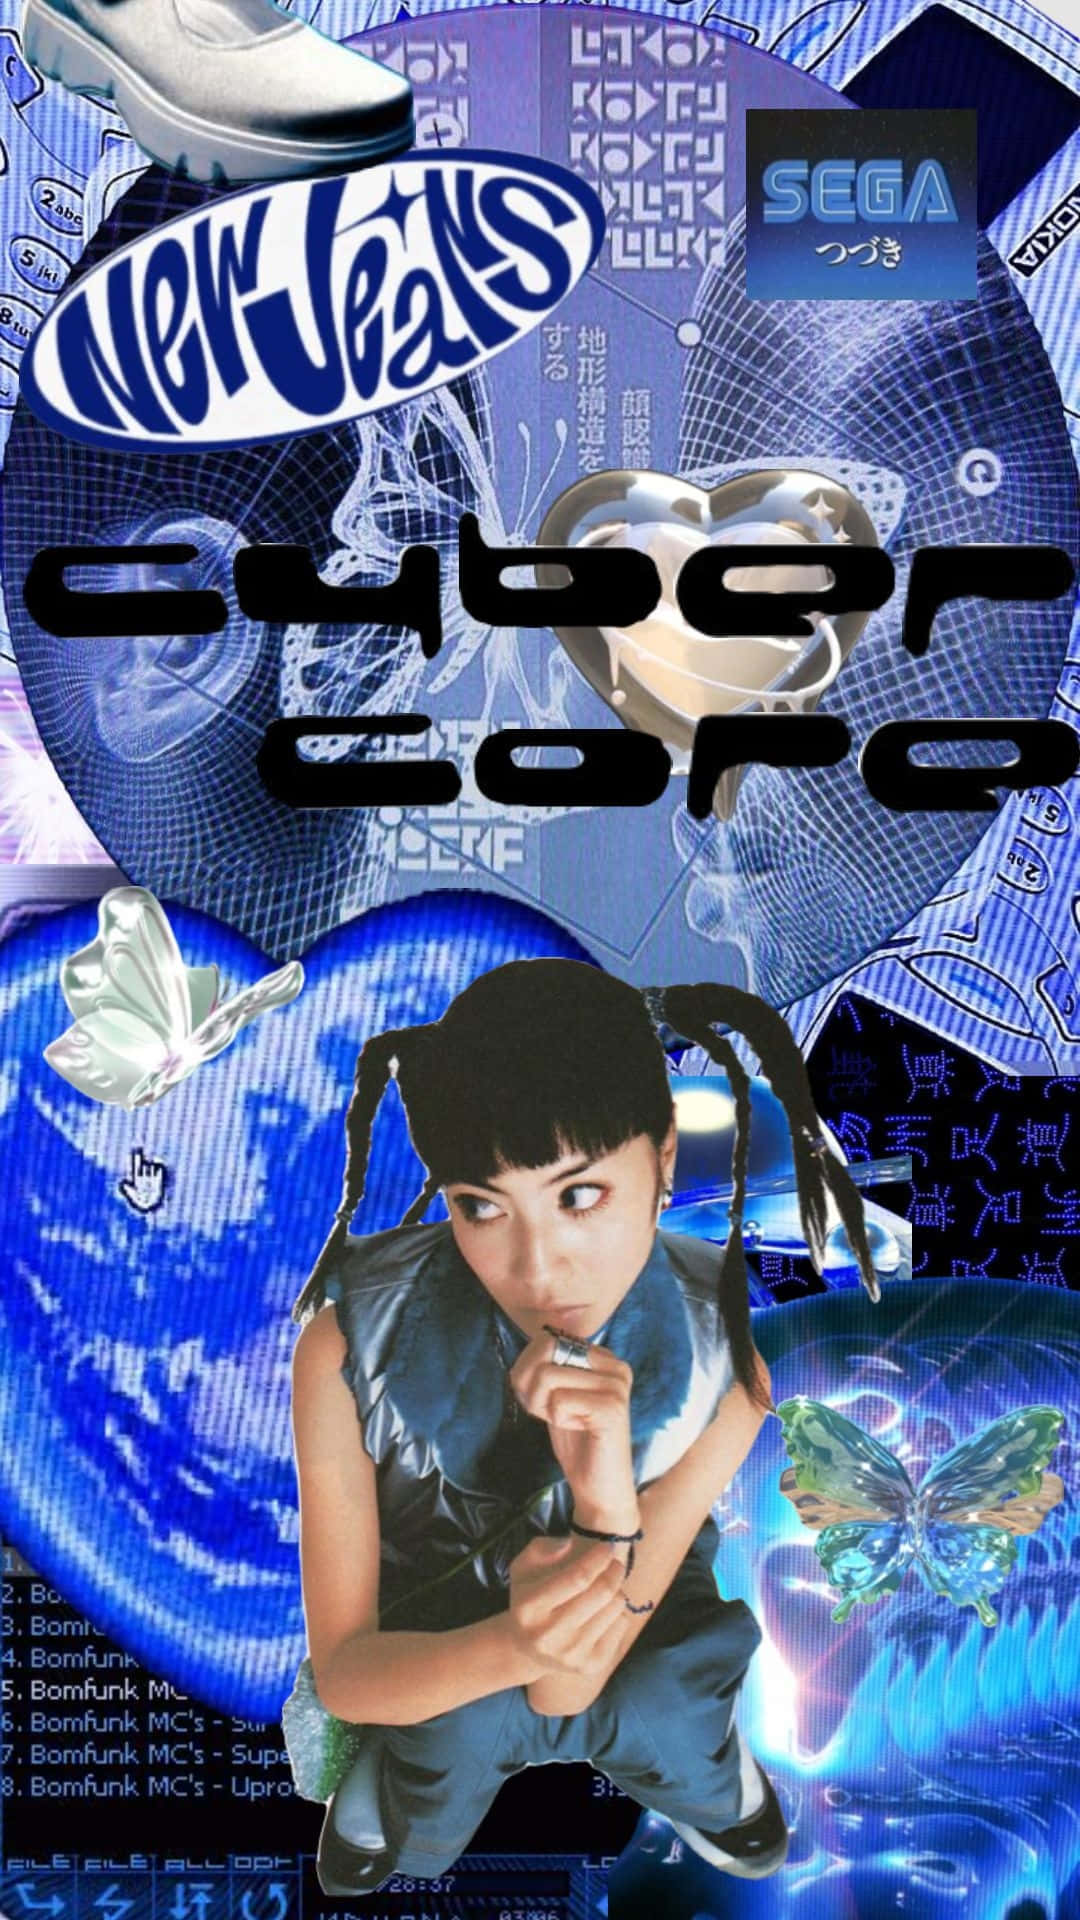 Cybercore Y2 K Aesthetic Collage Wallpaper